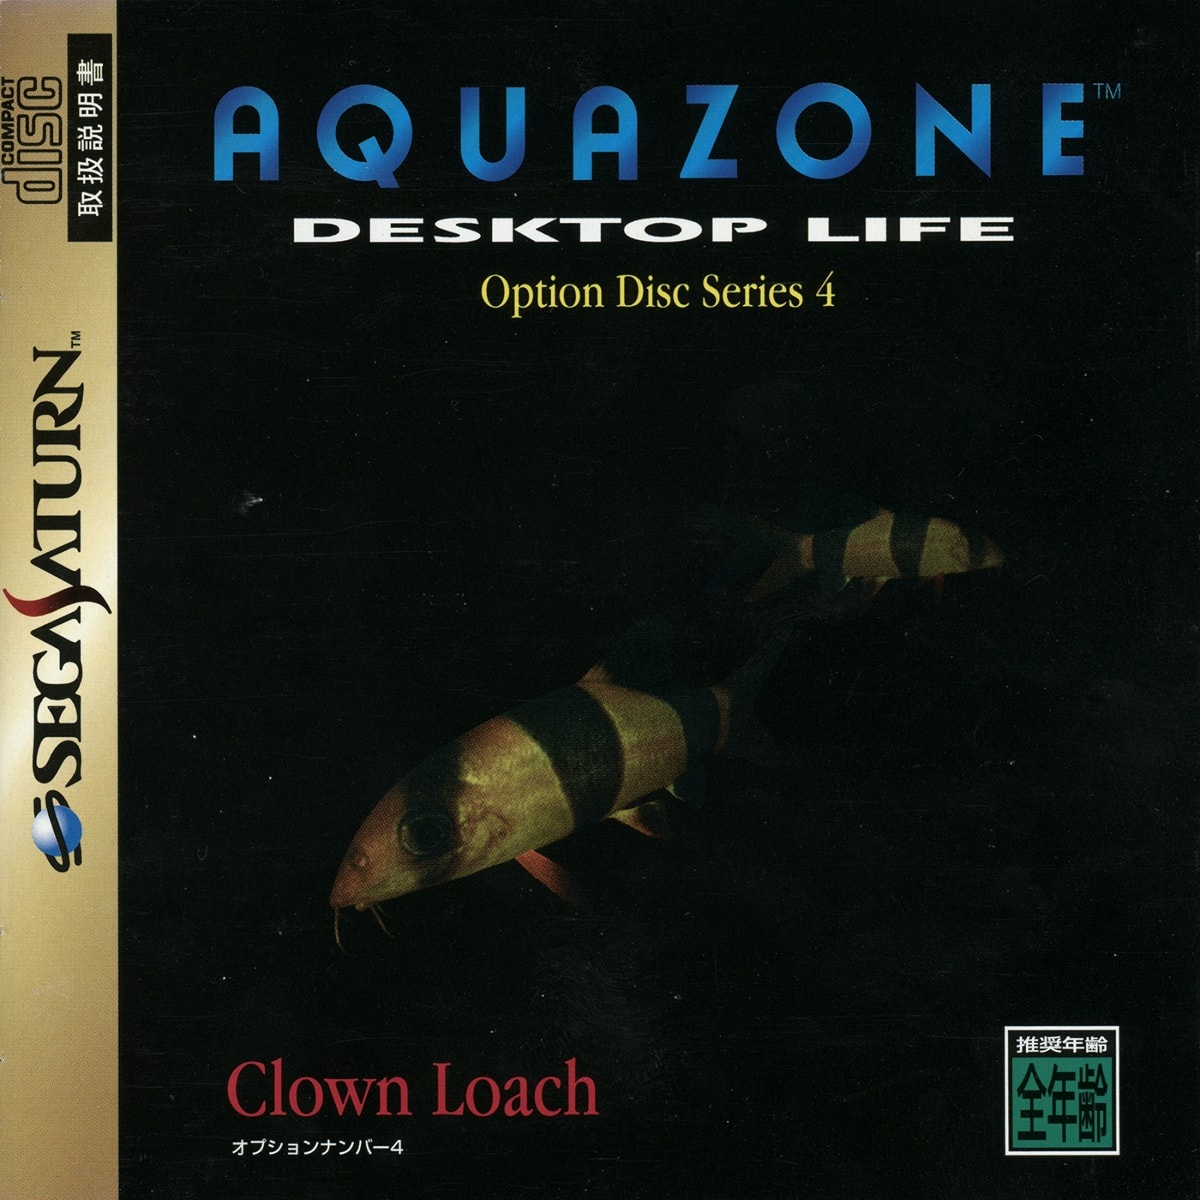 Aquazone Option Disc Series 4 Clown Loach cover